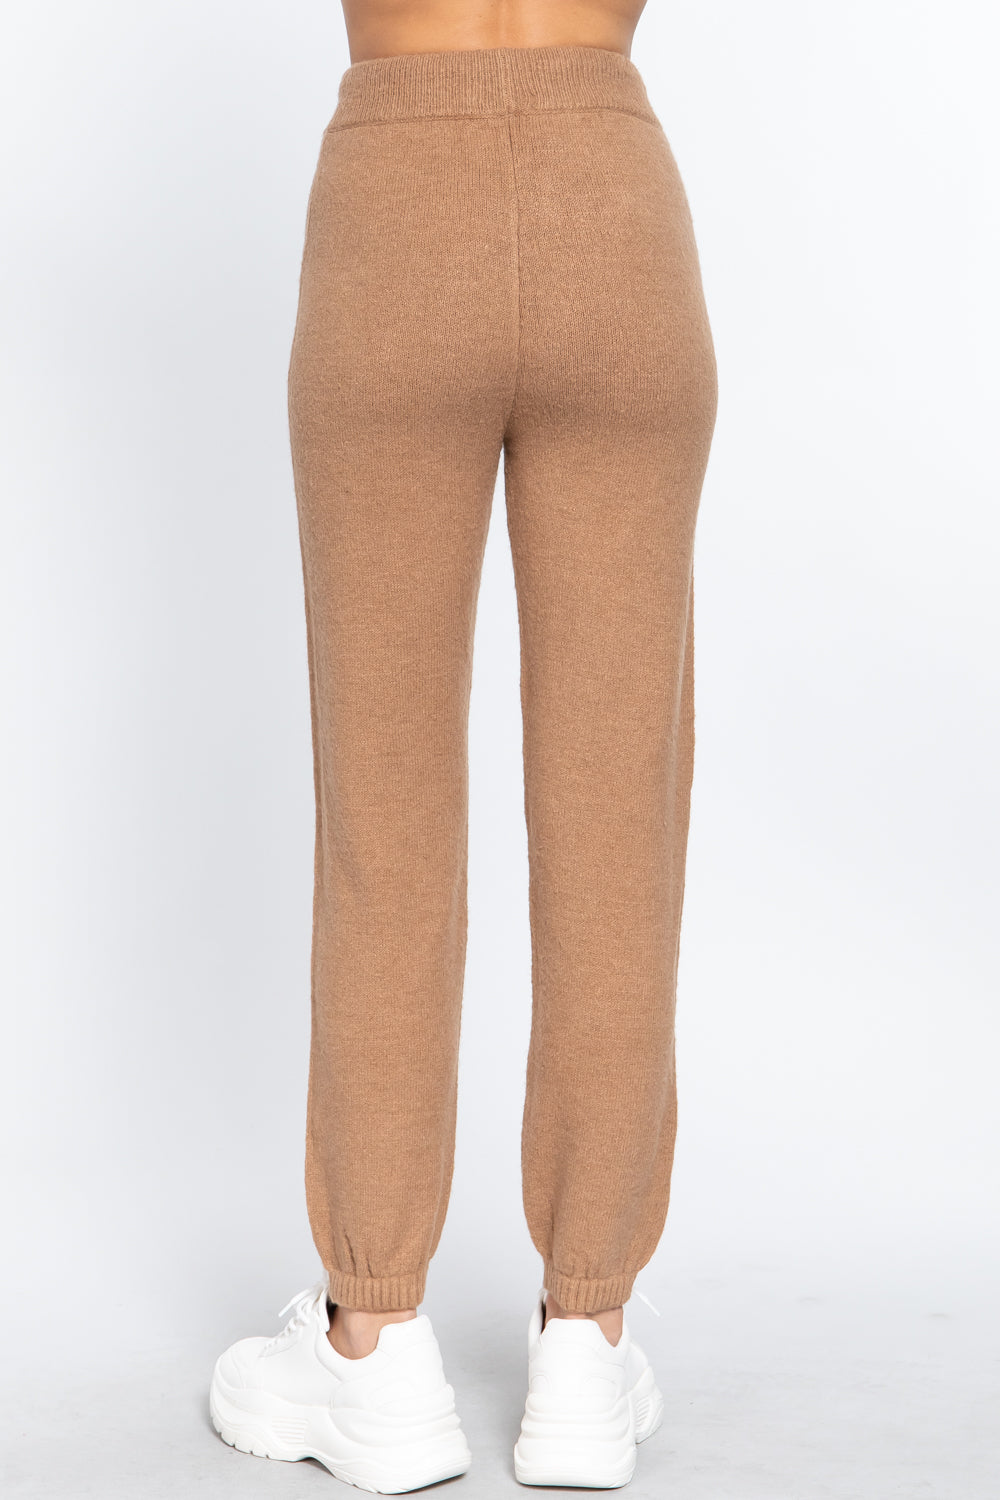 Drawstring Sweater Long Pants Drawstring Sweater Long Pants - M&R CORNER M&R CORNER